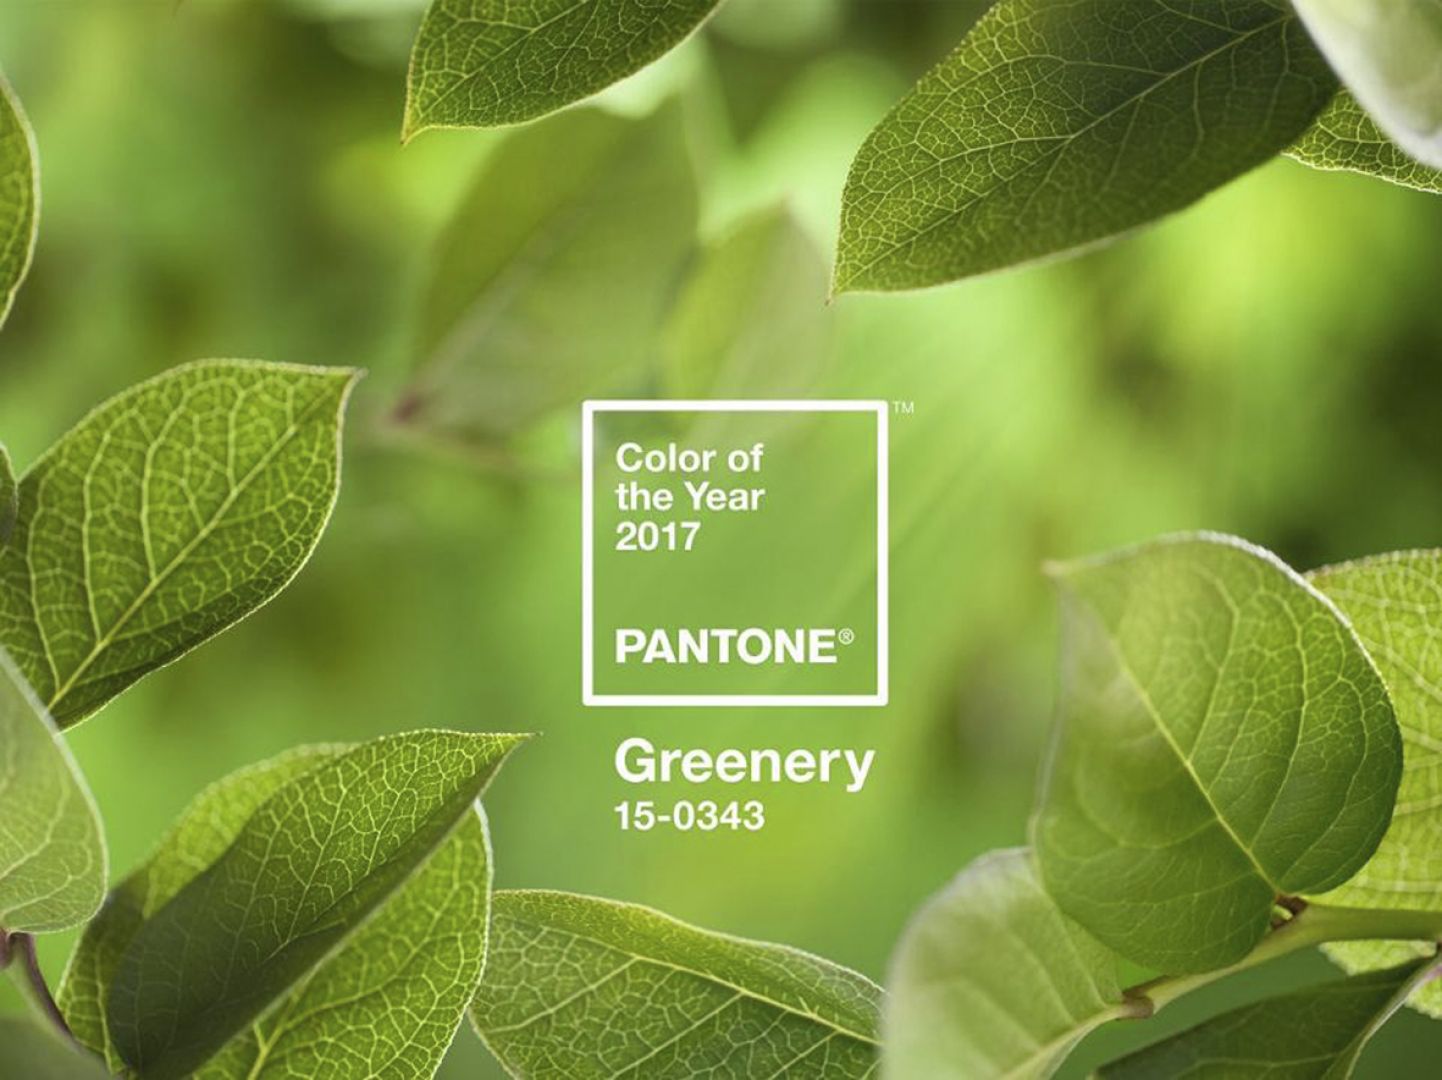 Instytut Pantone okrzyknął kolorem roku 2017 soczystą zieleń Greenery. Fot. Pantone